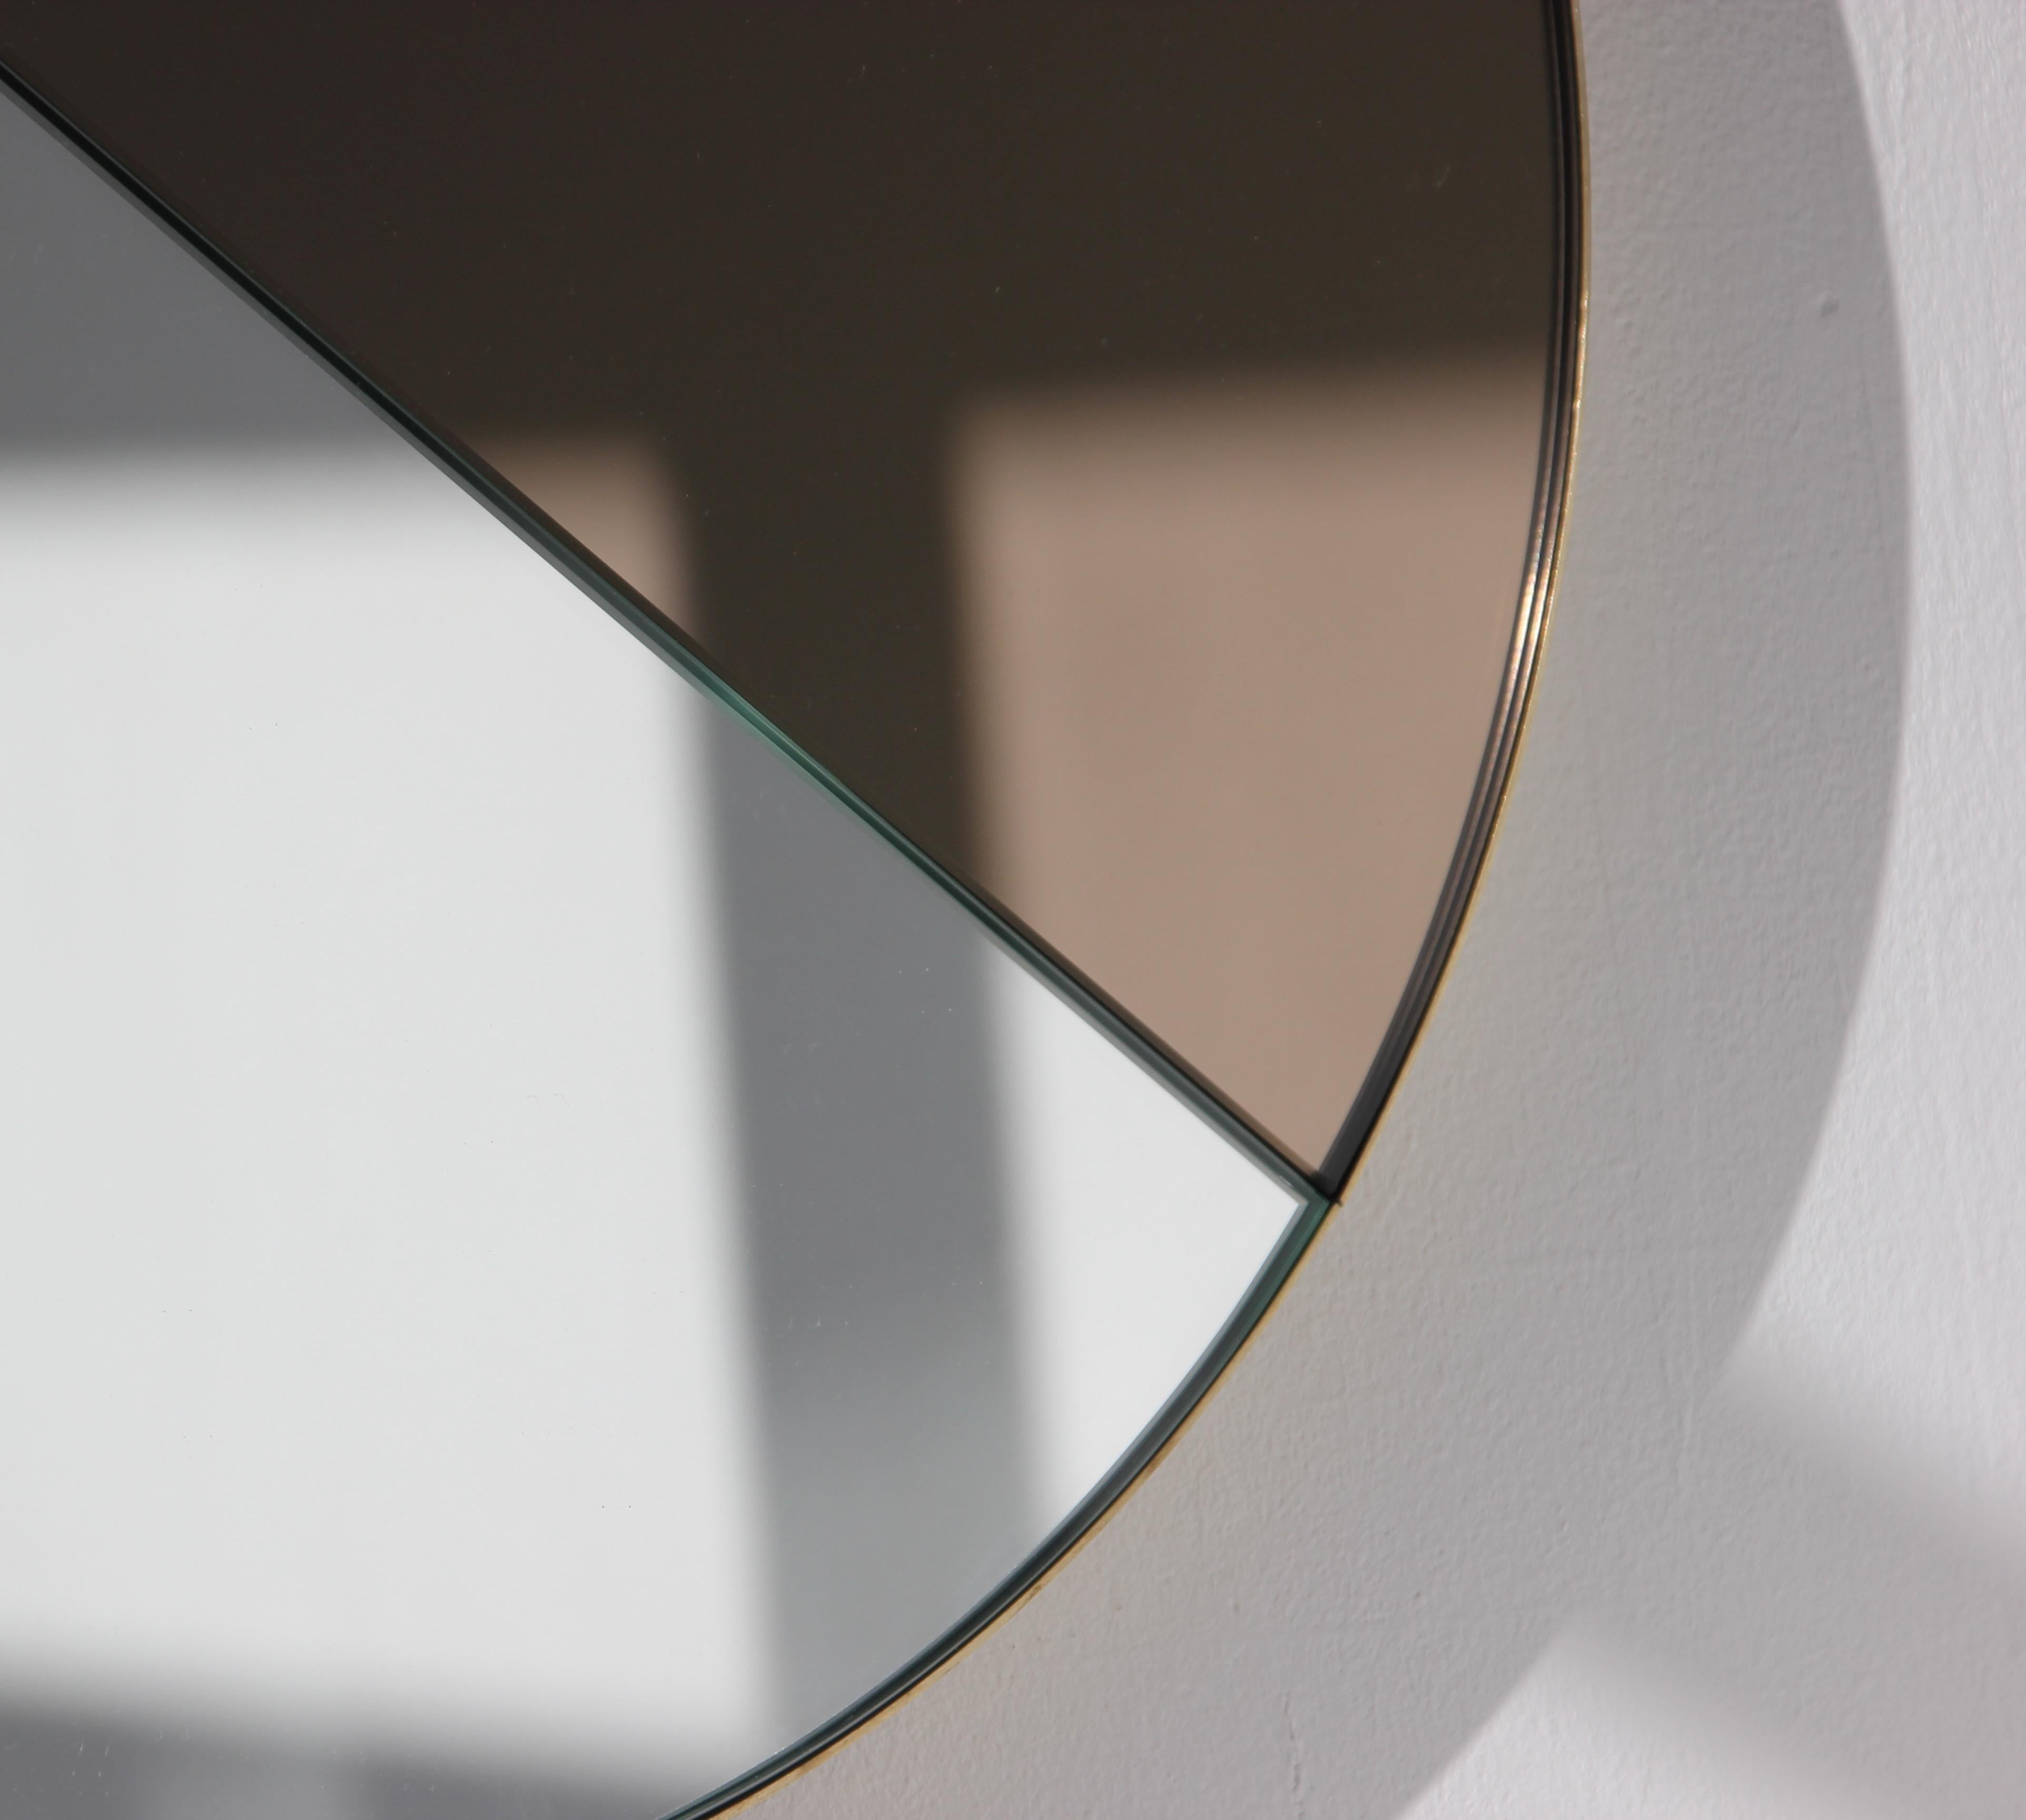 Zeitgenössischer Orbis Dualis™-Spiegel in einer Mischung aus getönter Bronze und Silber mit einem eleganten Rahmen aus gebürstetem Messing.  Entworfen und handgefertigt in London, UK.

Alle Spiegel sind mit einem ausgeklügelten Befestigungssystem